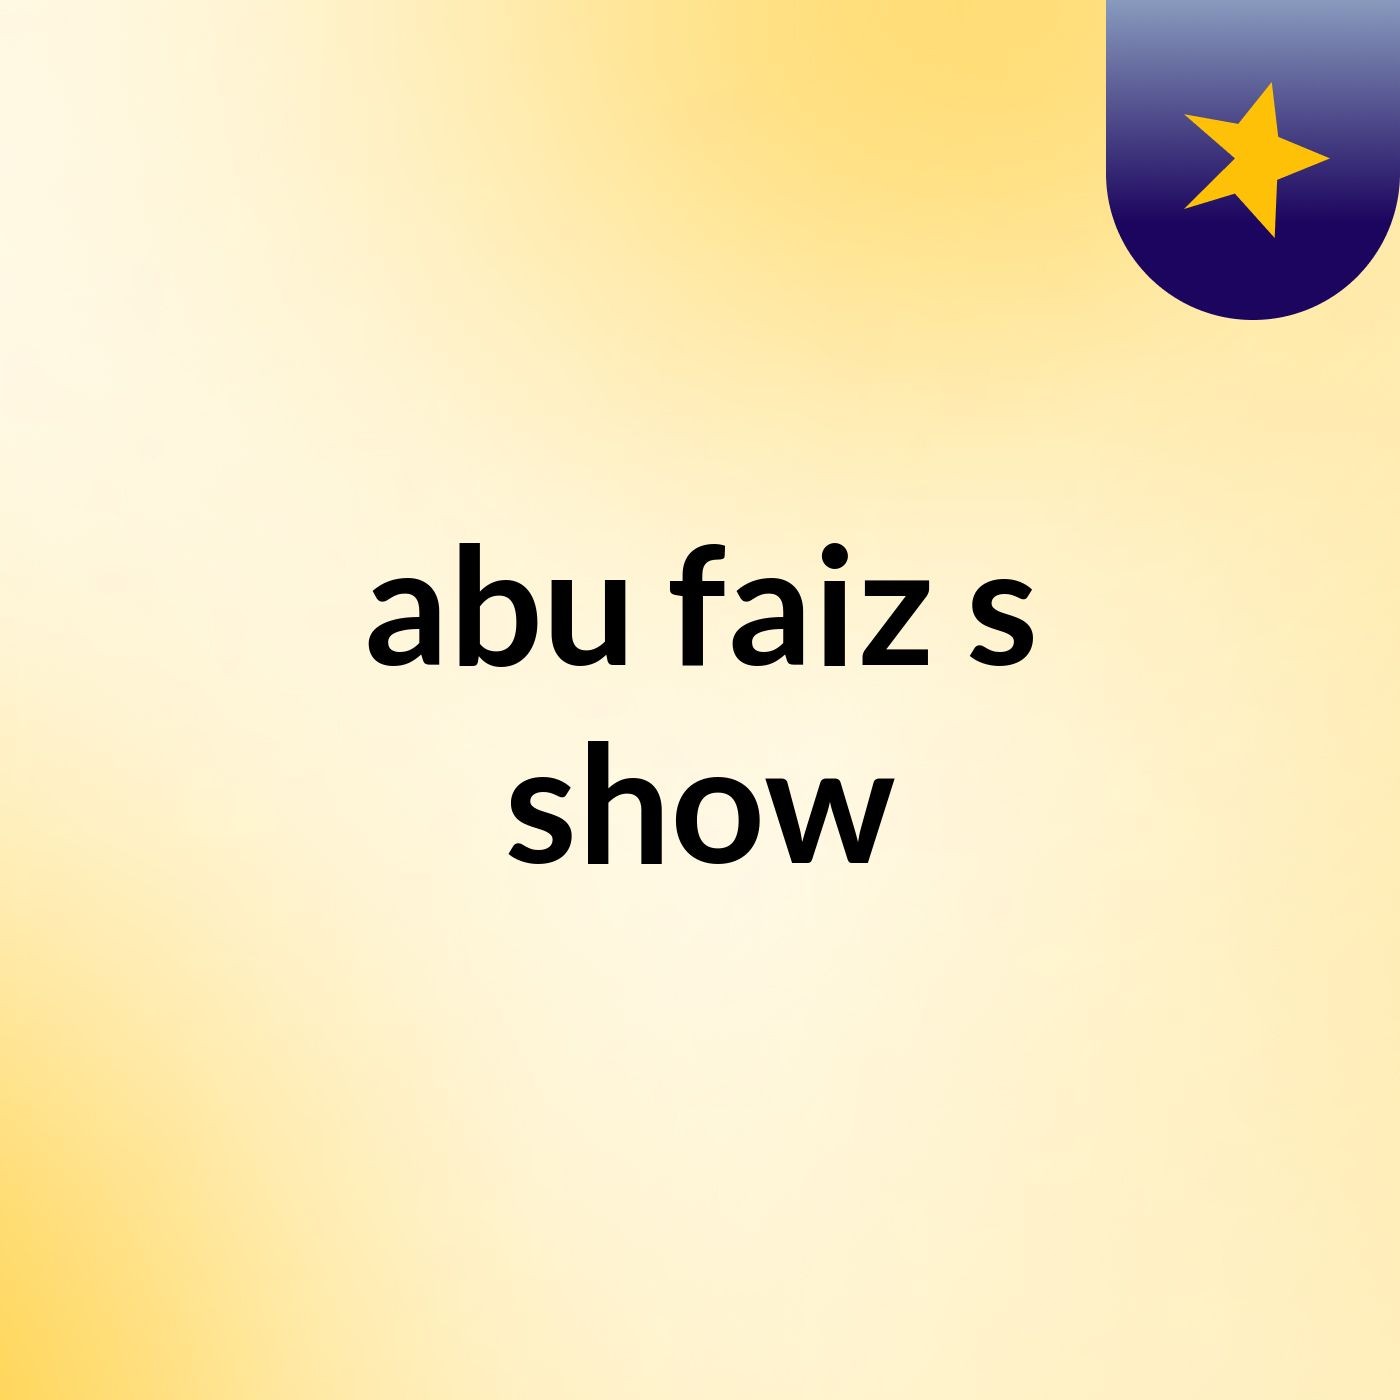 abu faiz's show